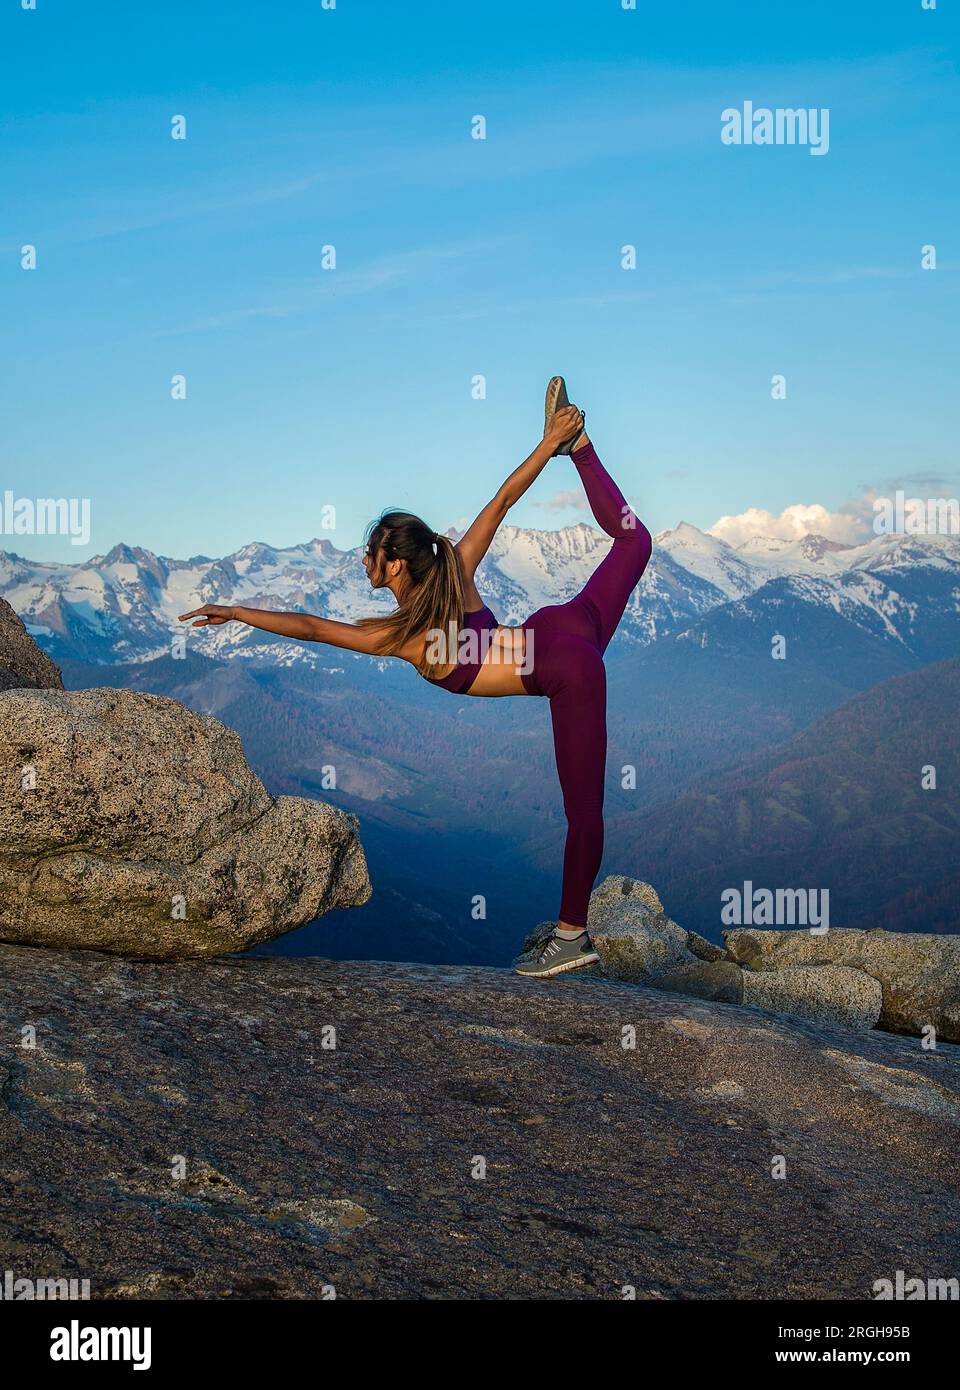 Young woman doing yoga sur un rocher Banque D'Images